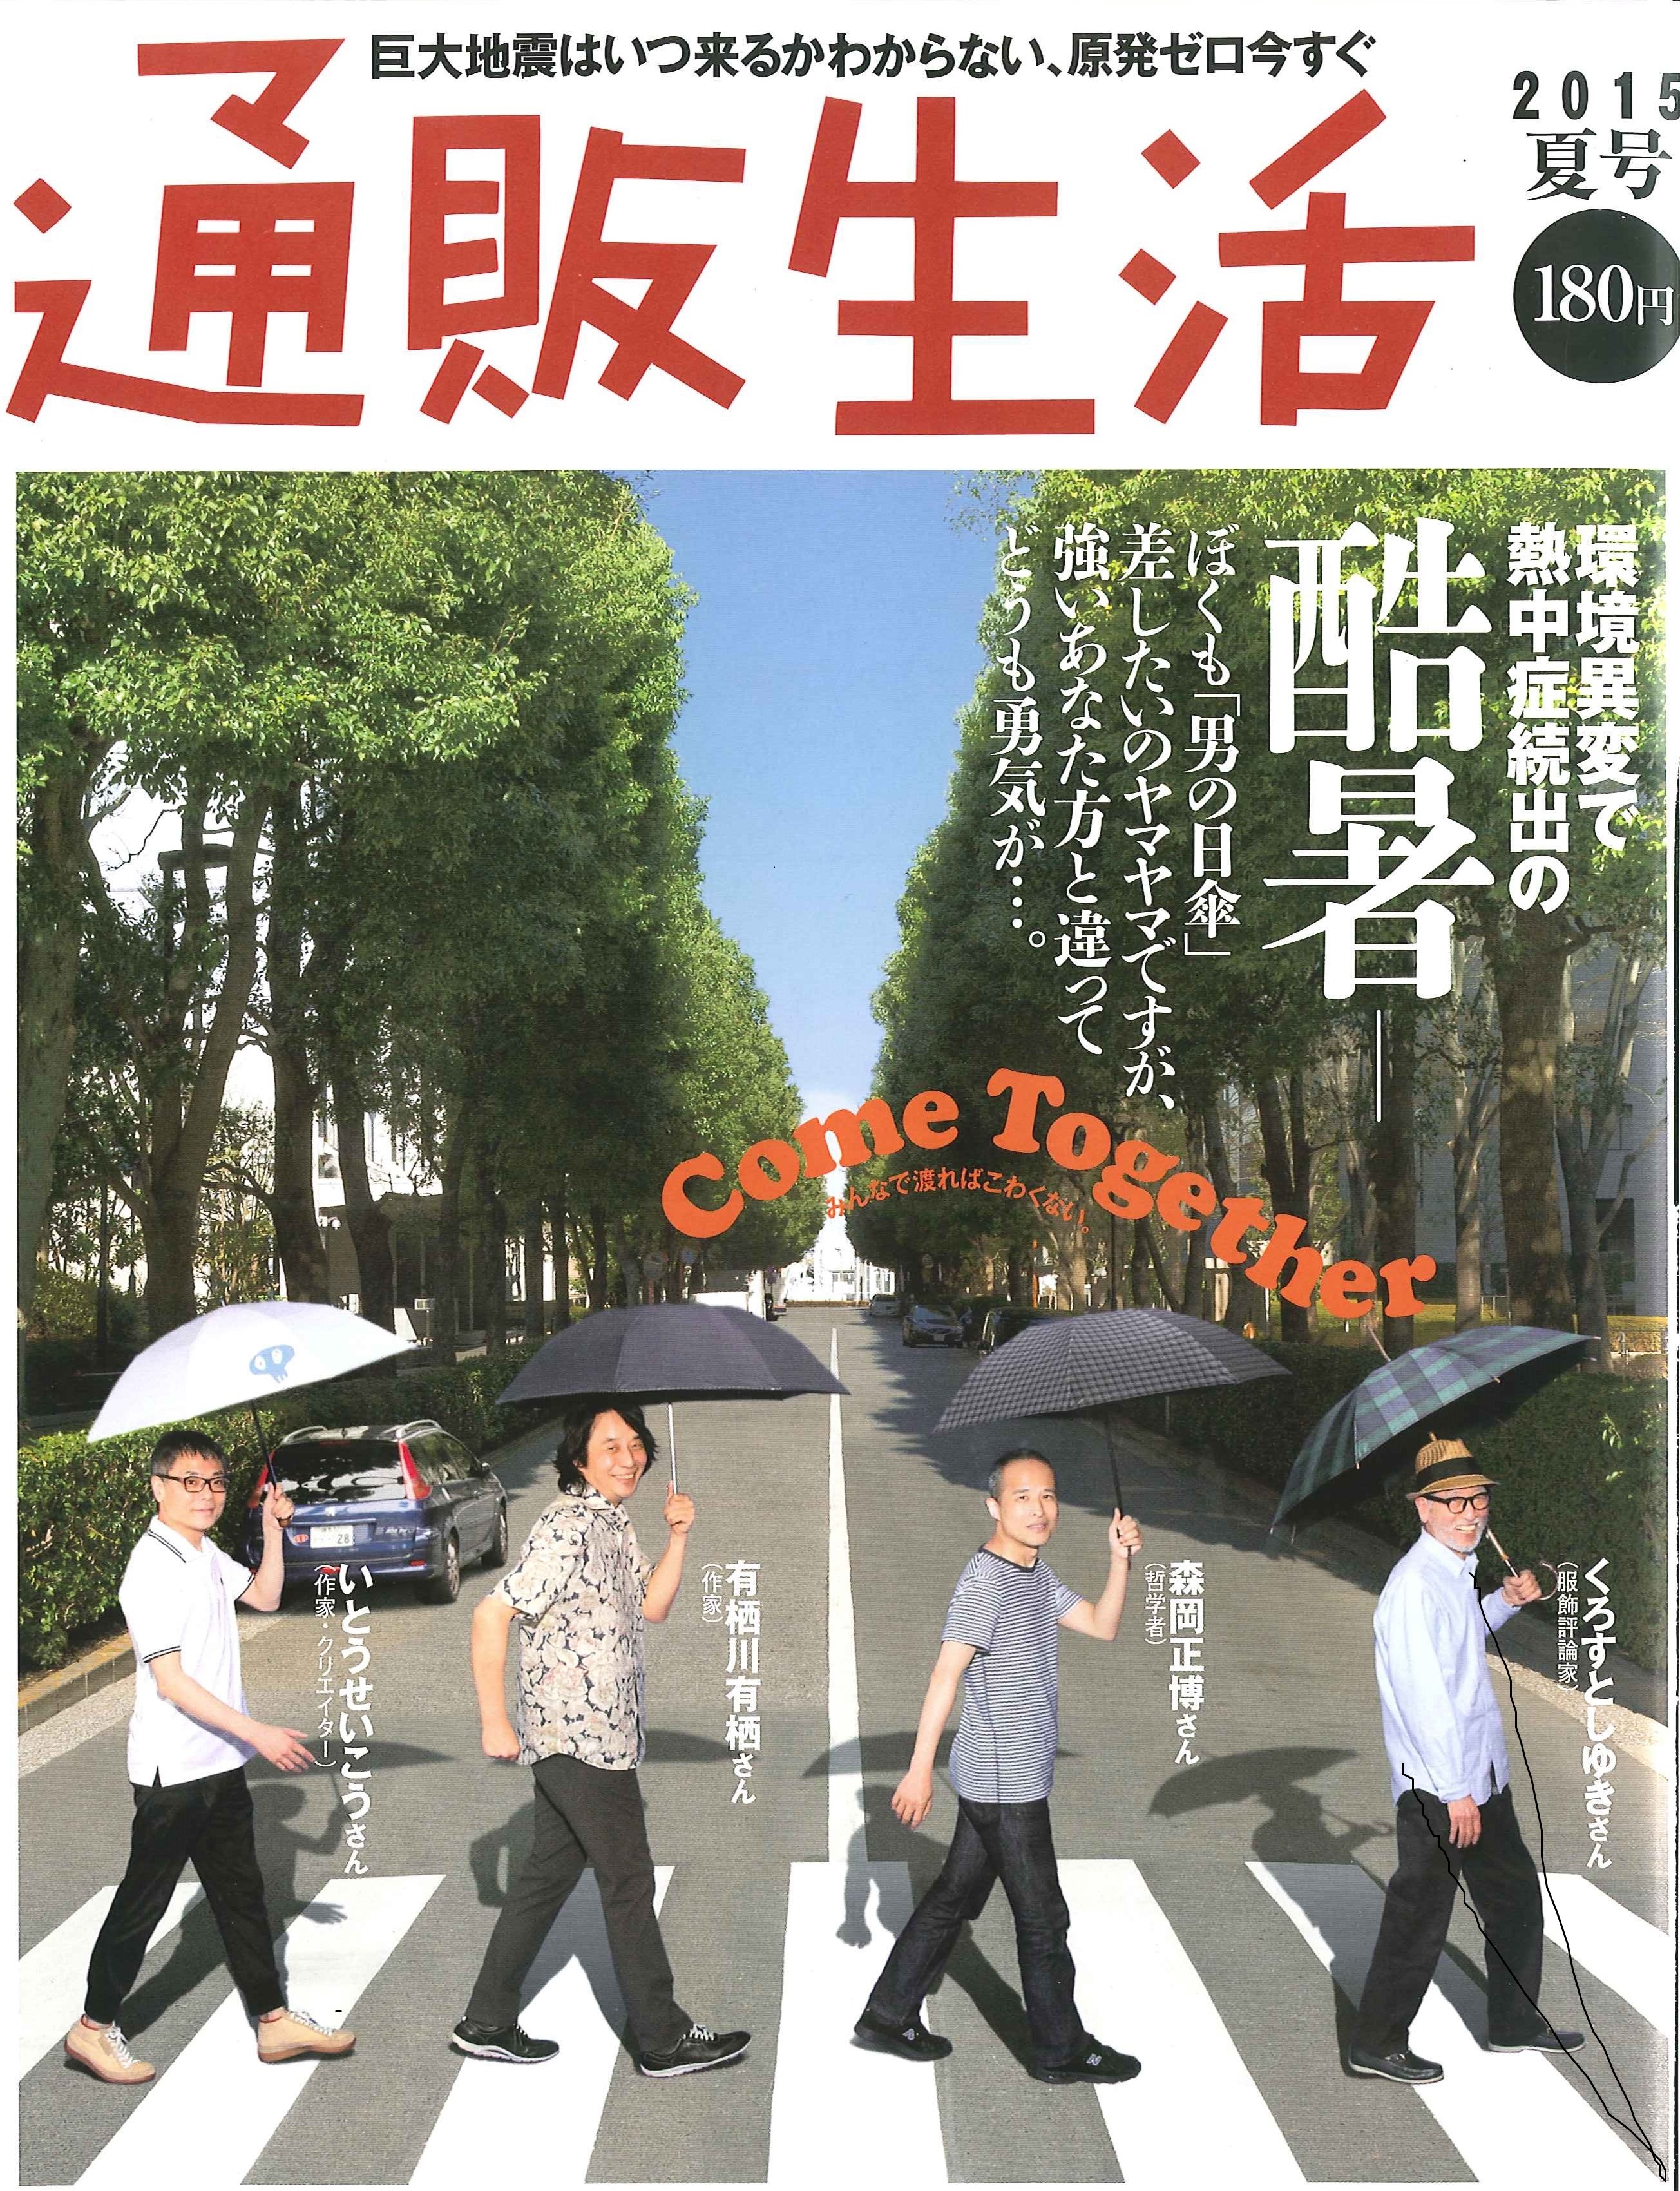 tsuhanseikatsu_cover_2015summer.jpg